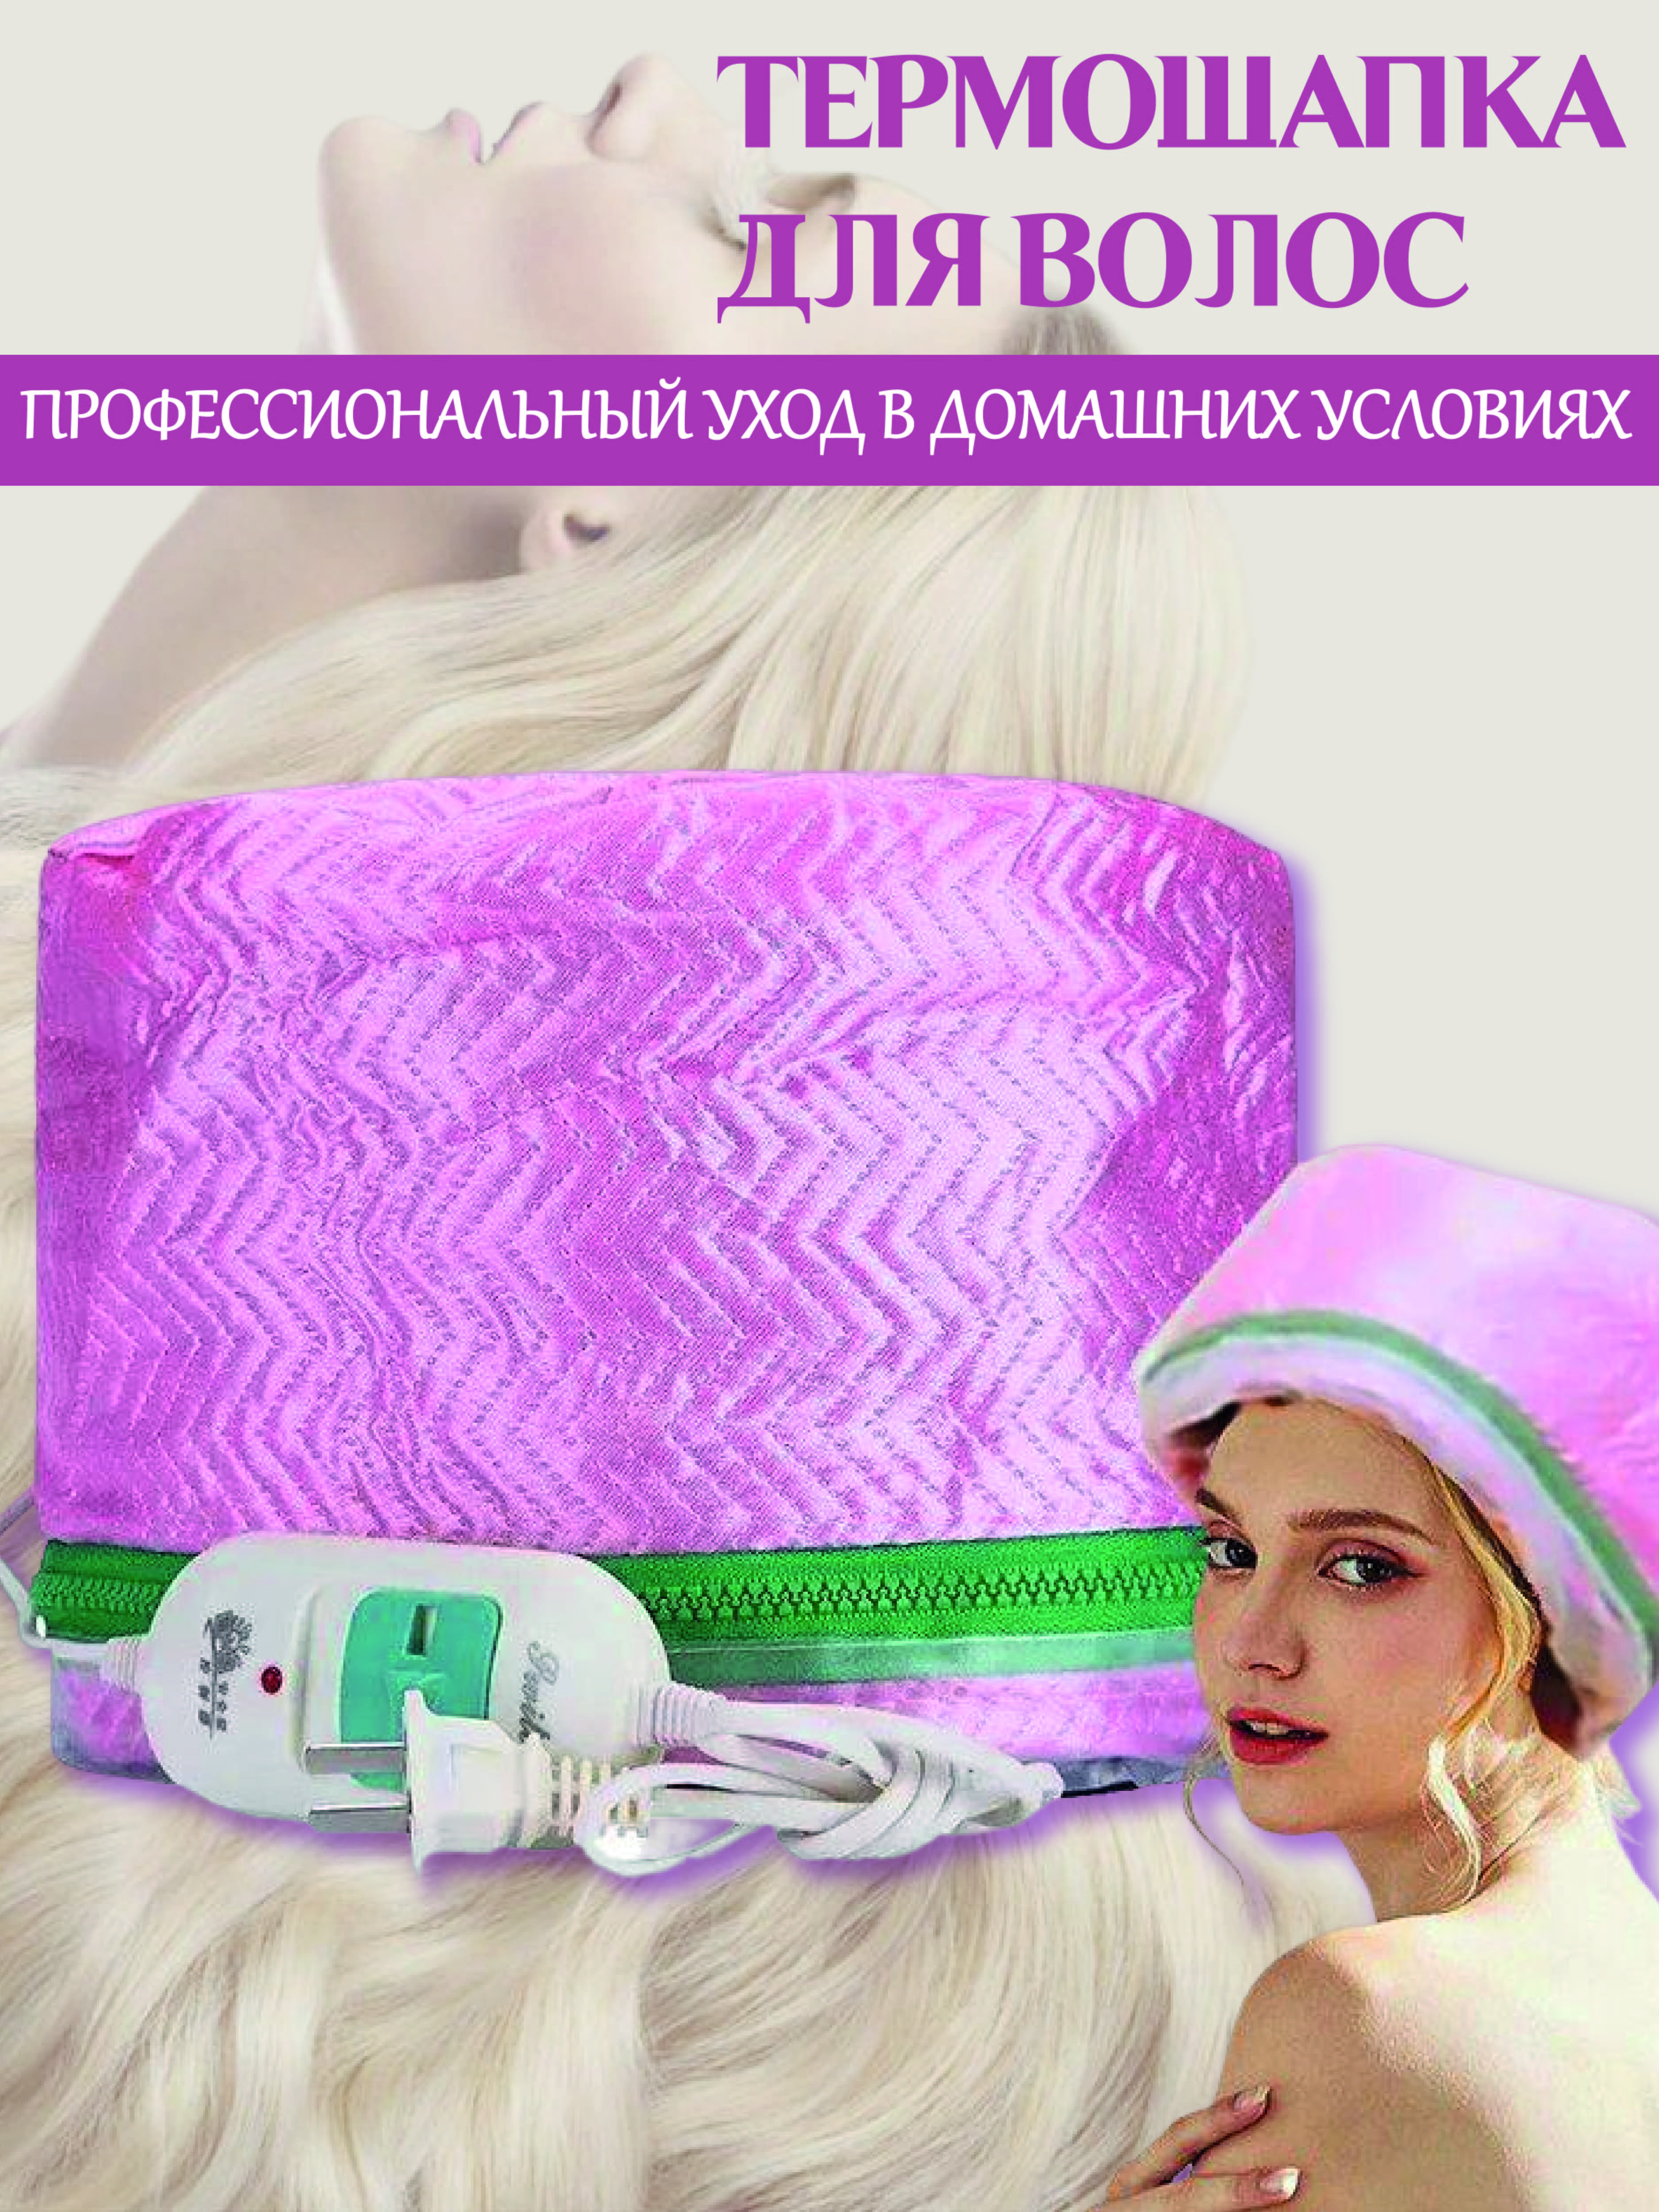 Термошапка для волос электрическая SellWildWoman Розовая mayitr usb электрическая грелка 3 передачи регулируемая температура diy термо жилет куртка